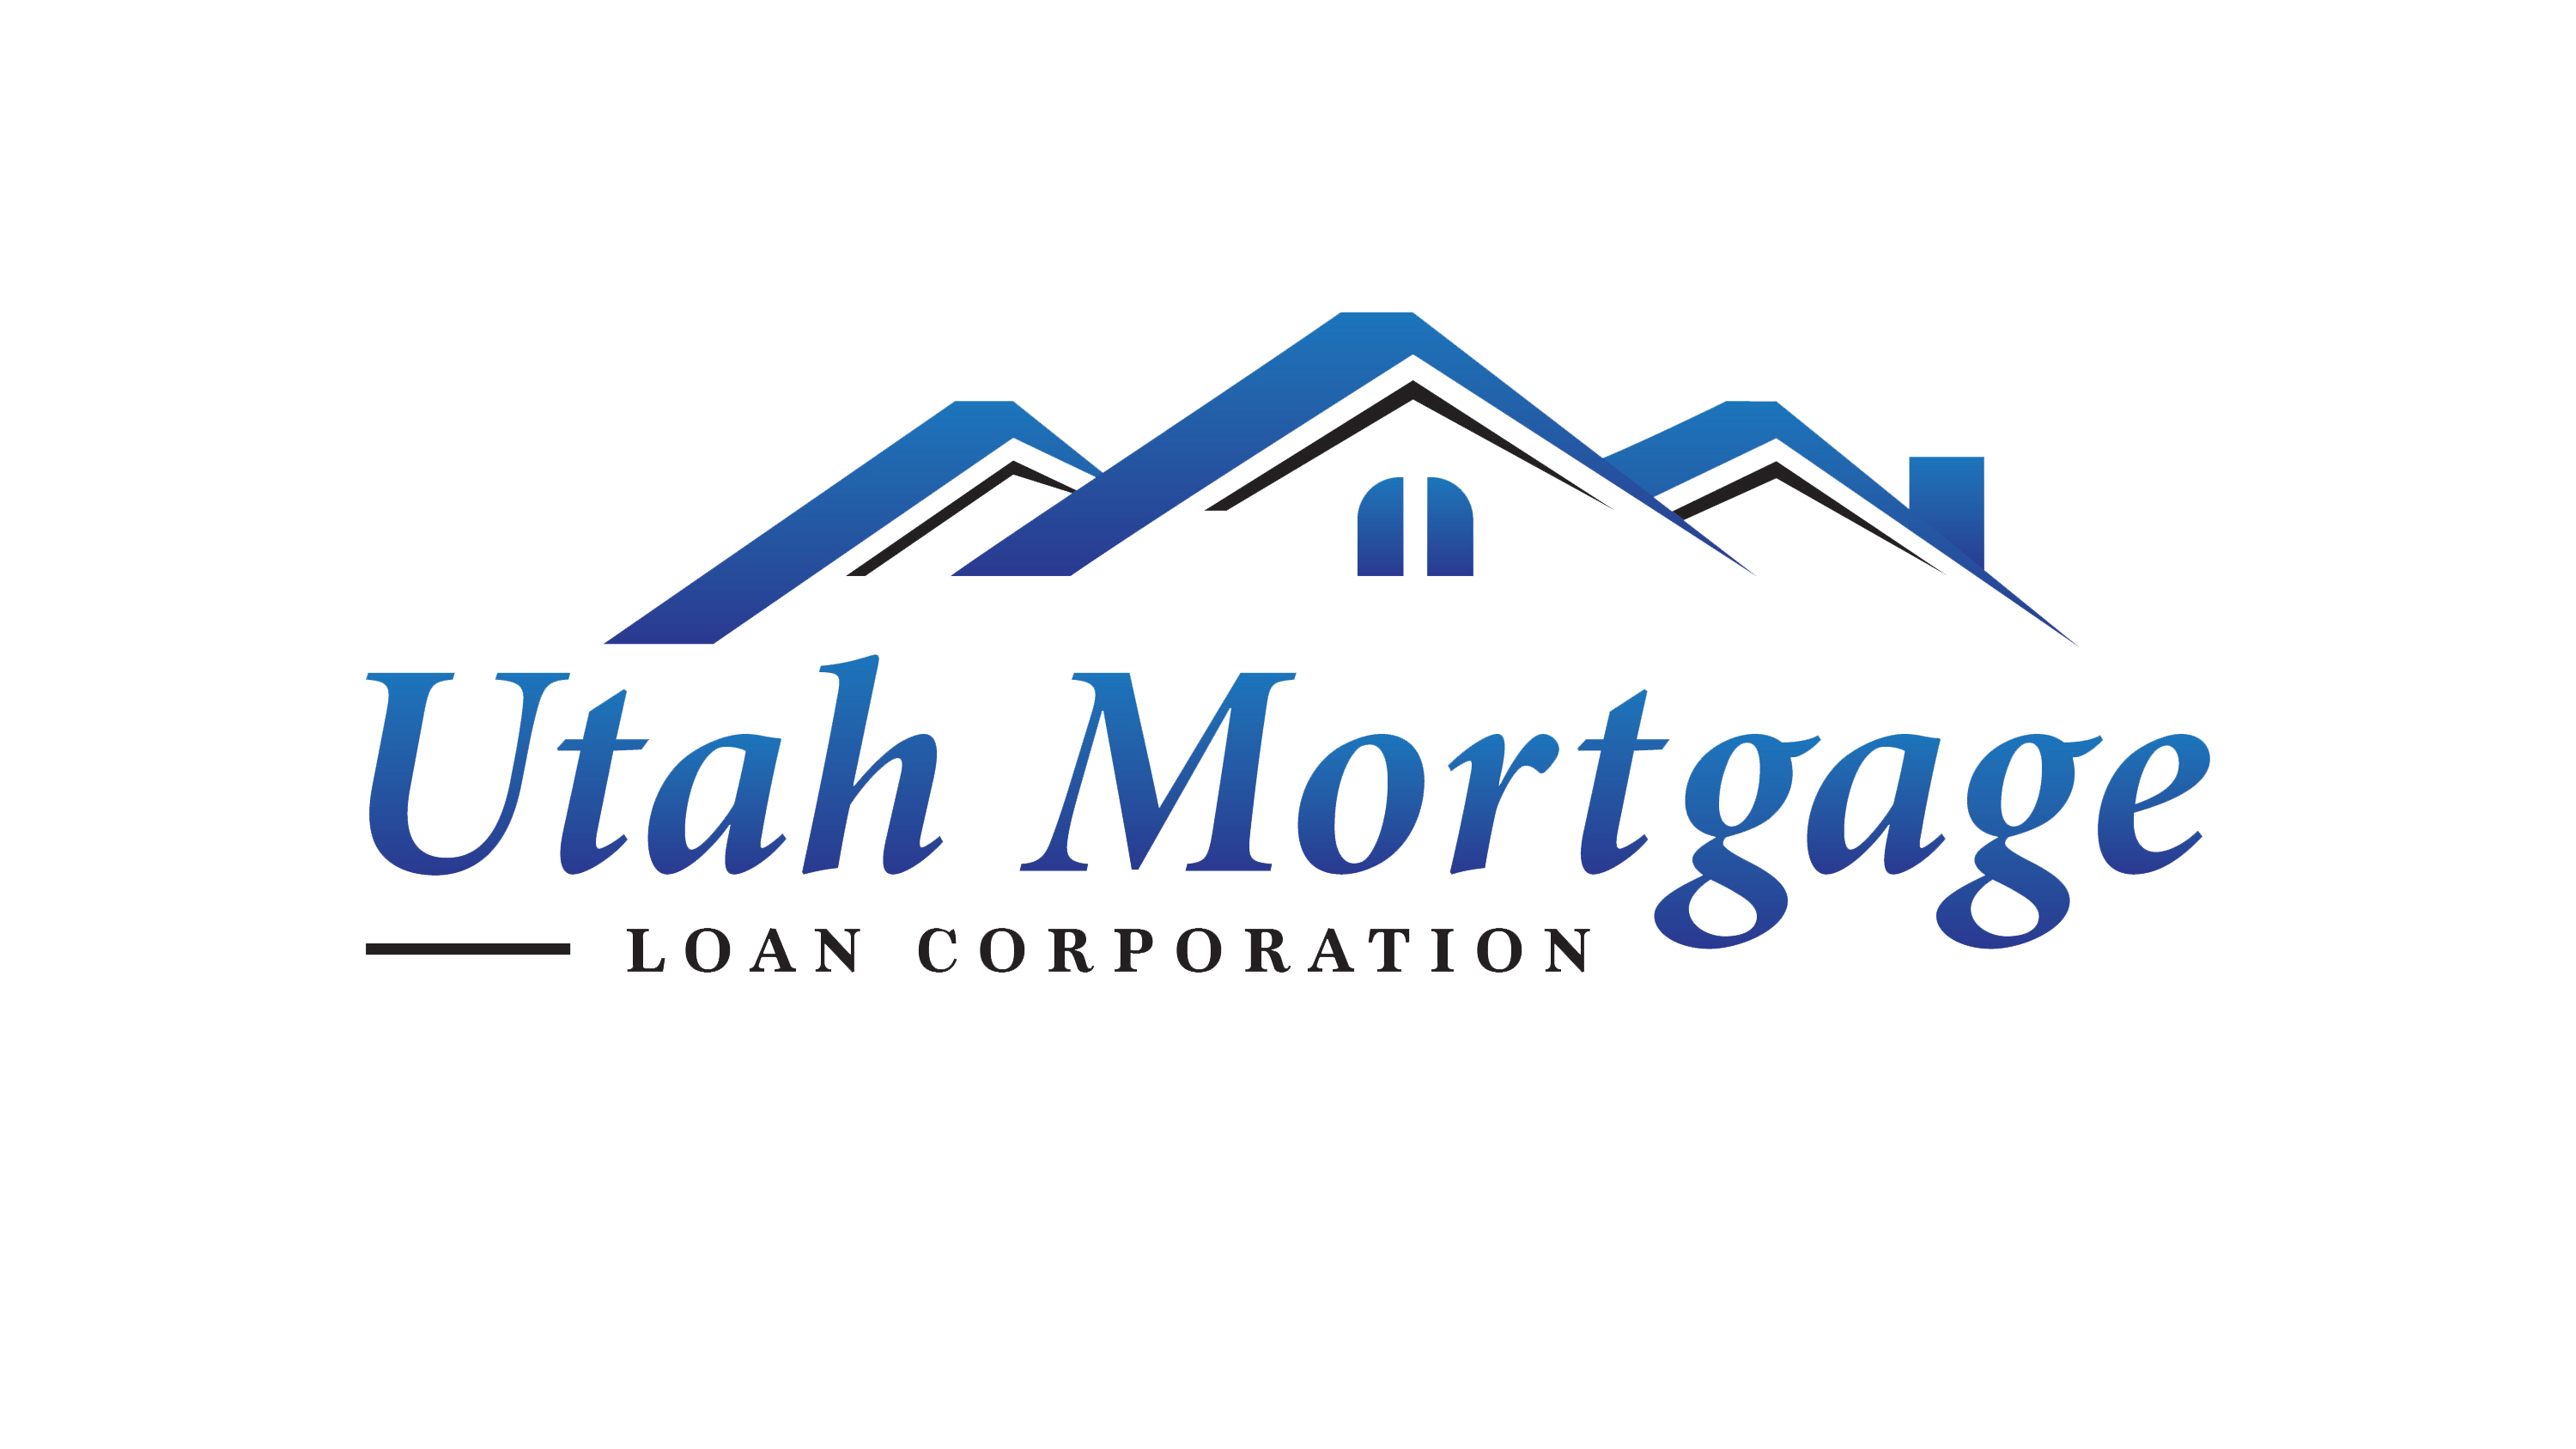 Loan Company Logo - Utah Mortgage Loan Corporation Original Utah Lender